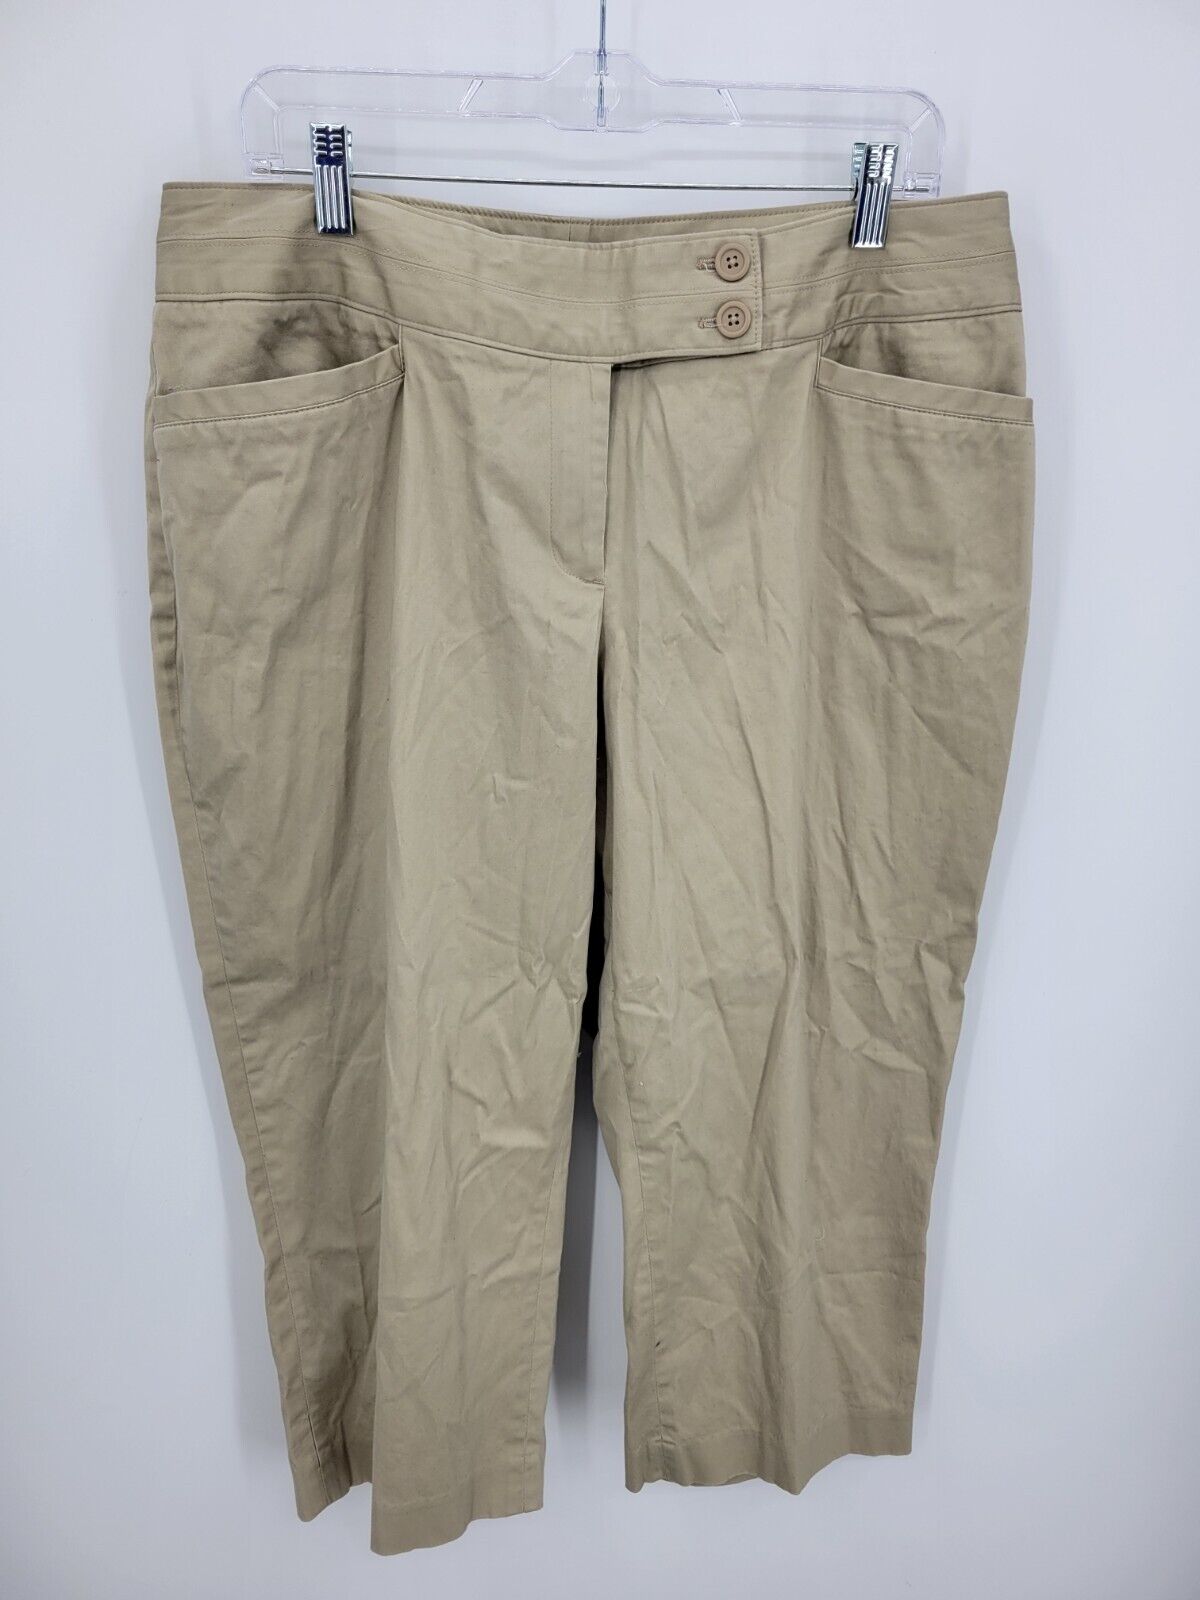 Lane Bryant Pants Womens 14 Tan Khaki Cropped Flat Front Pockets Double Button